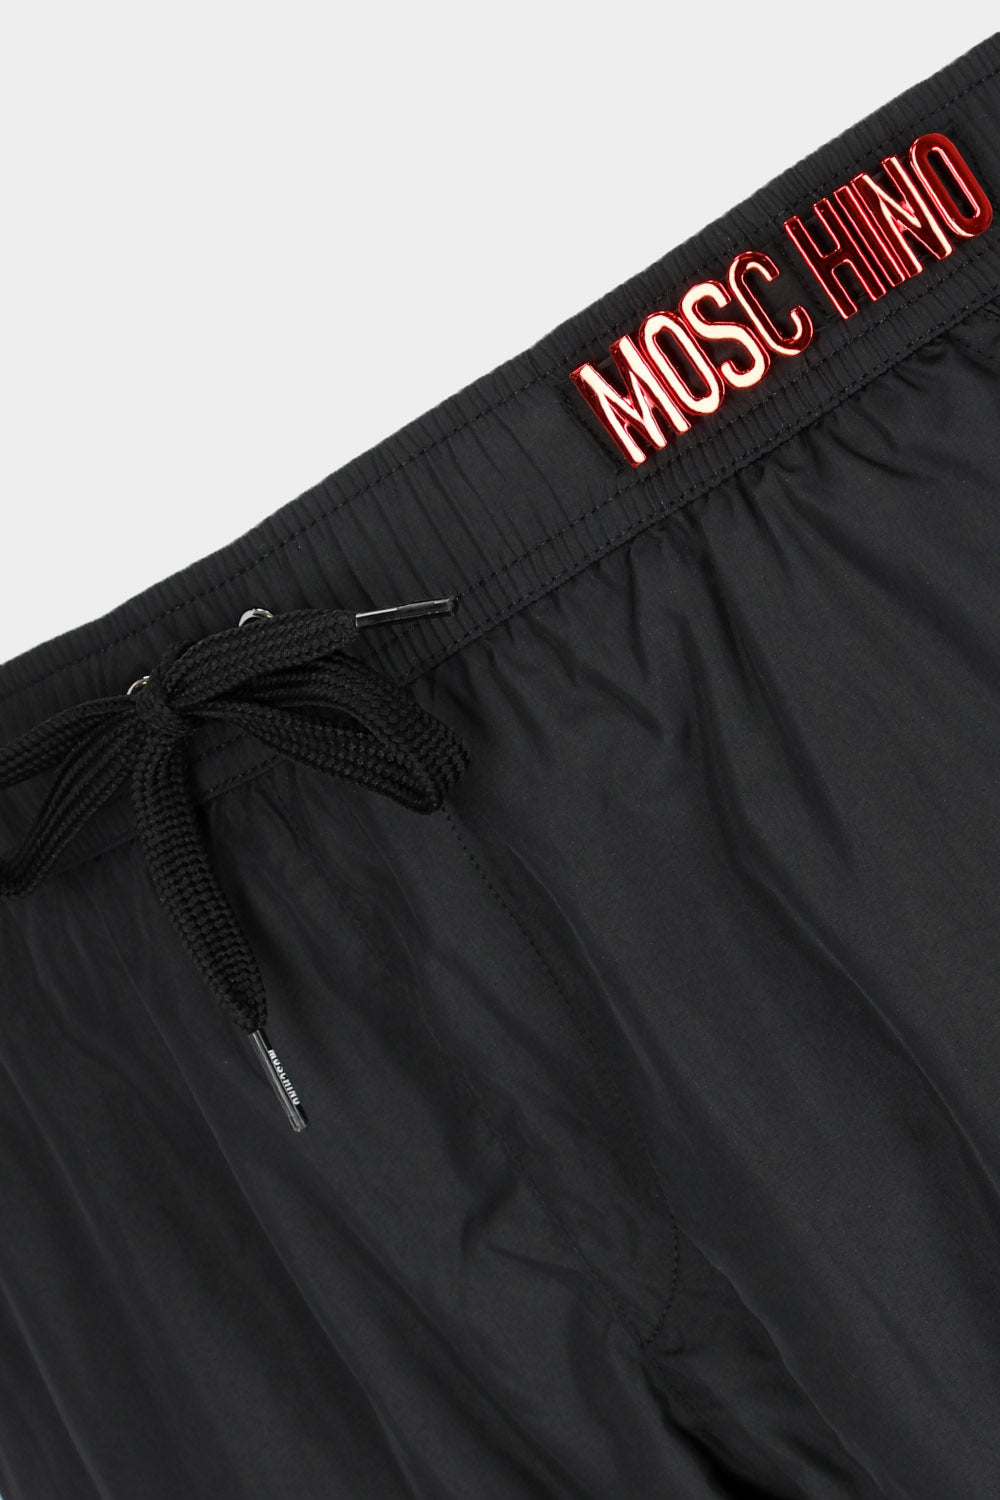 בגד ים לגברים בצבע שחור MOSCHINO MOSCHINO Vendome online | ונדום .